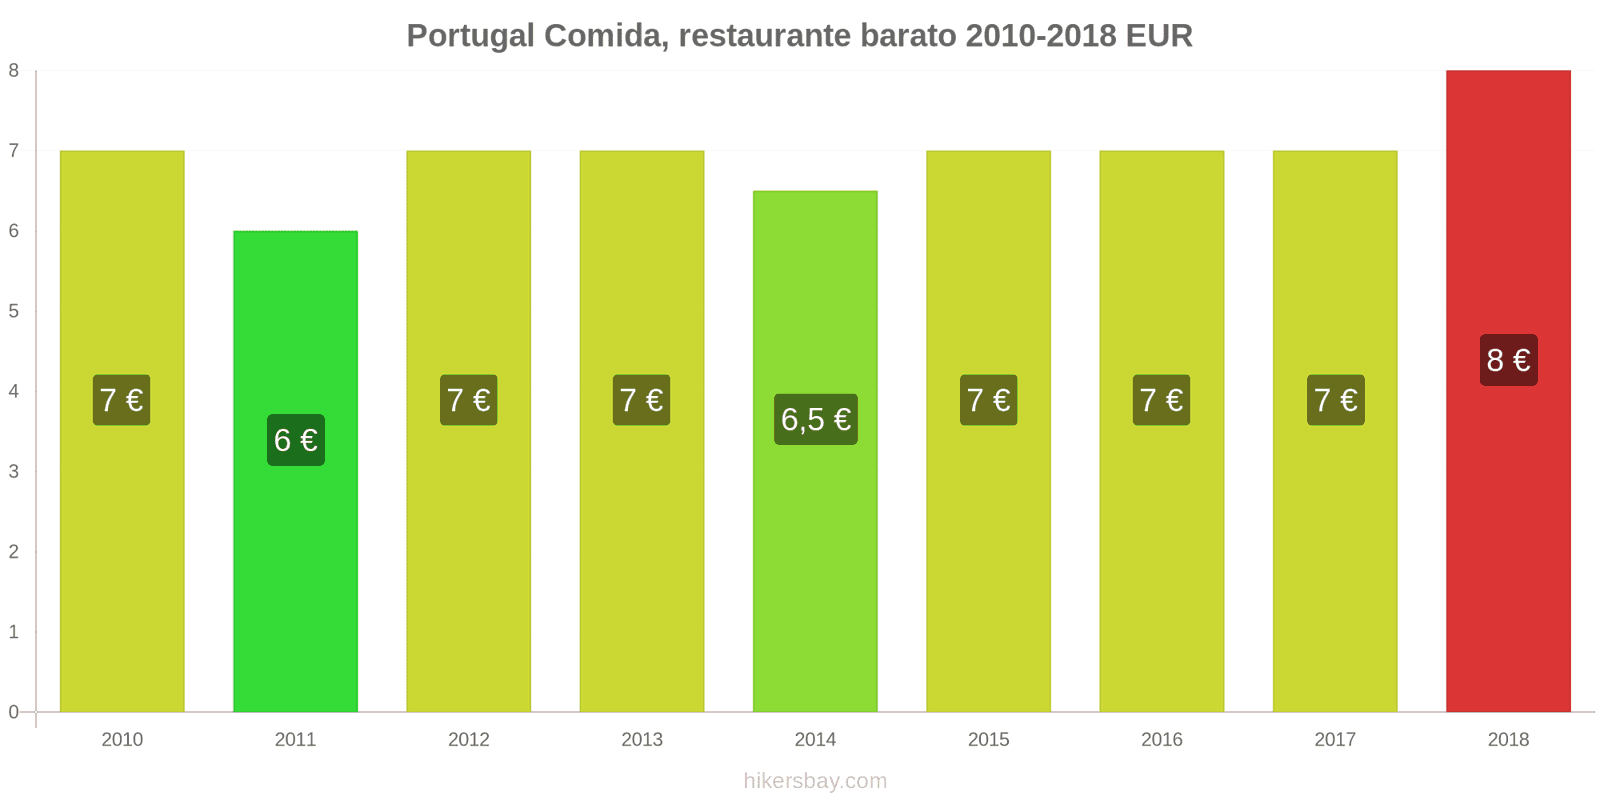 Portugal cambios de precios Comida en un restaurante económico hikersbay.com